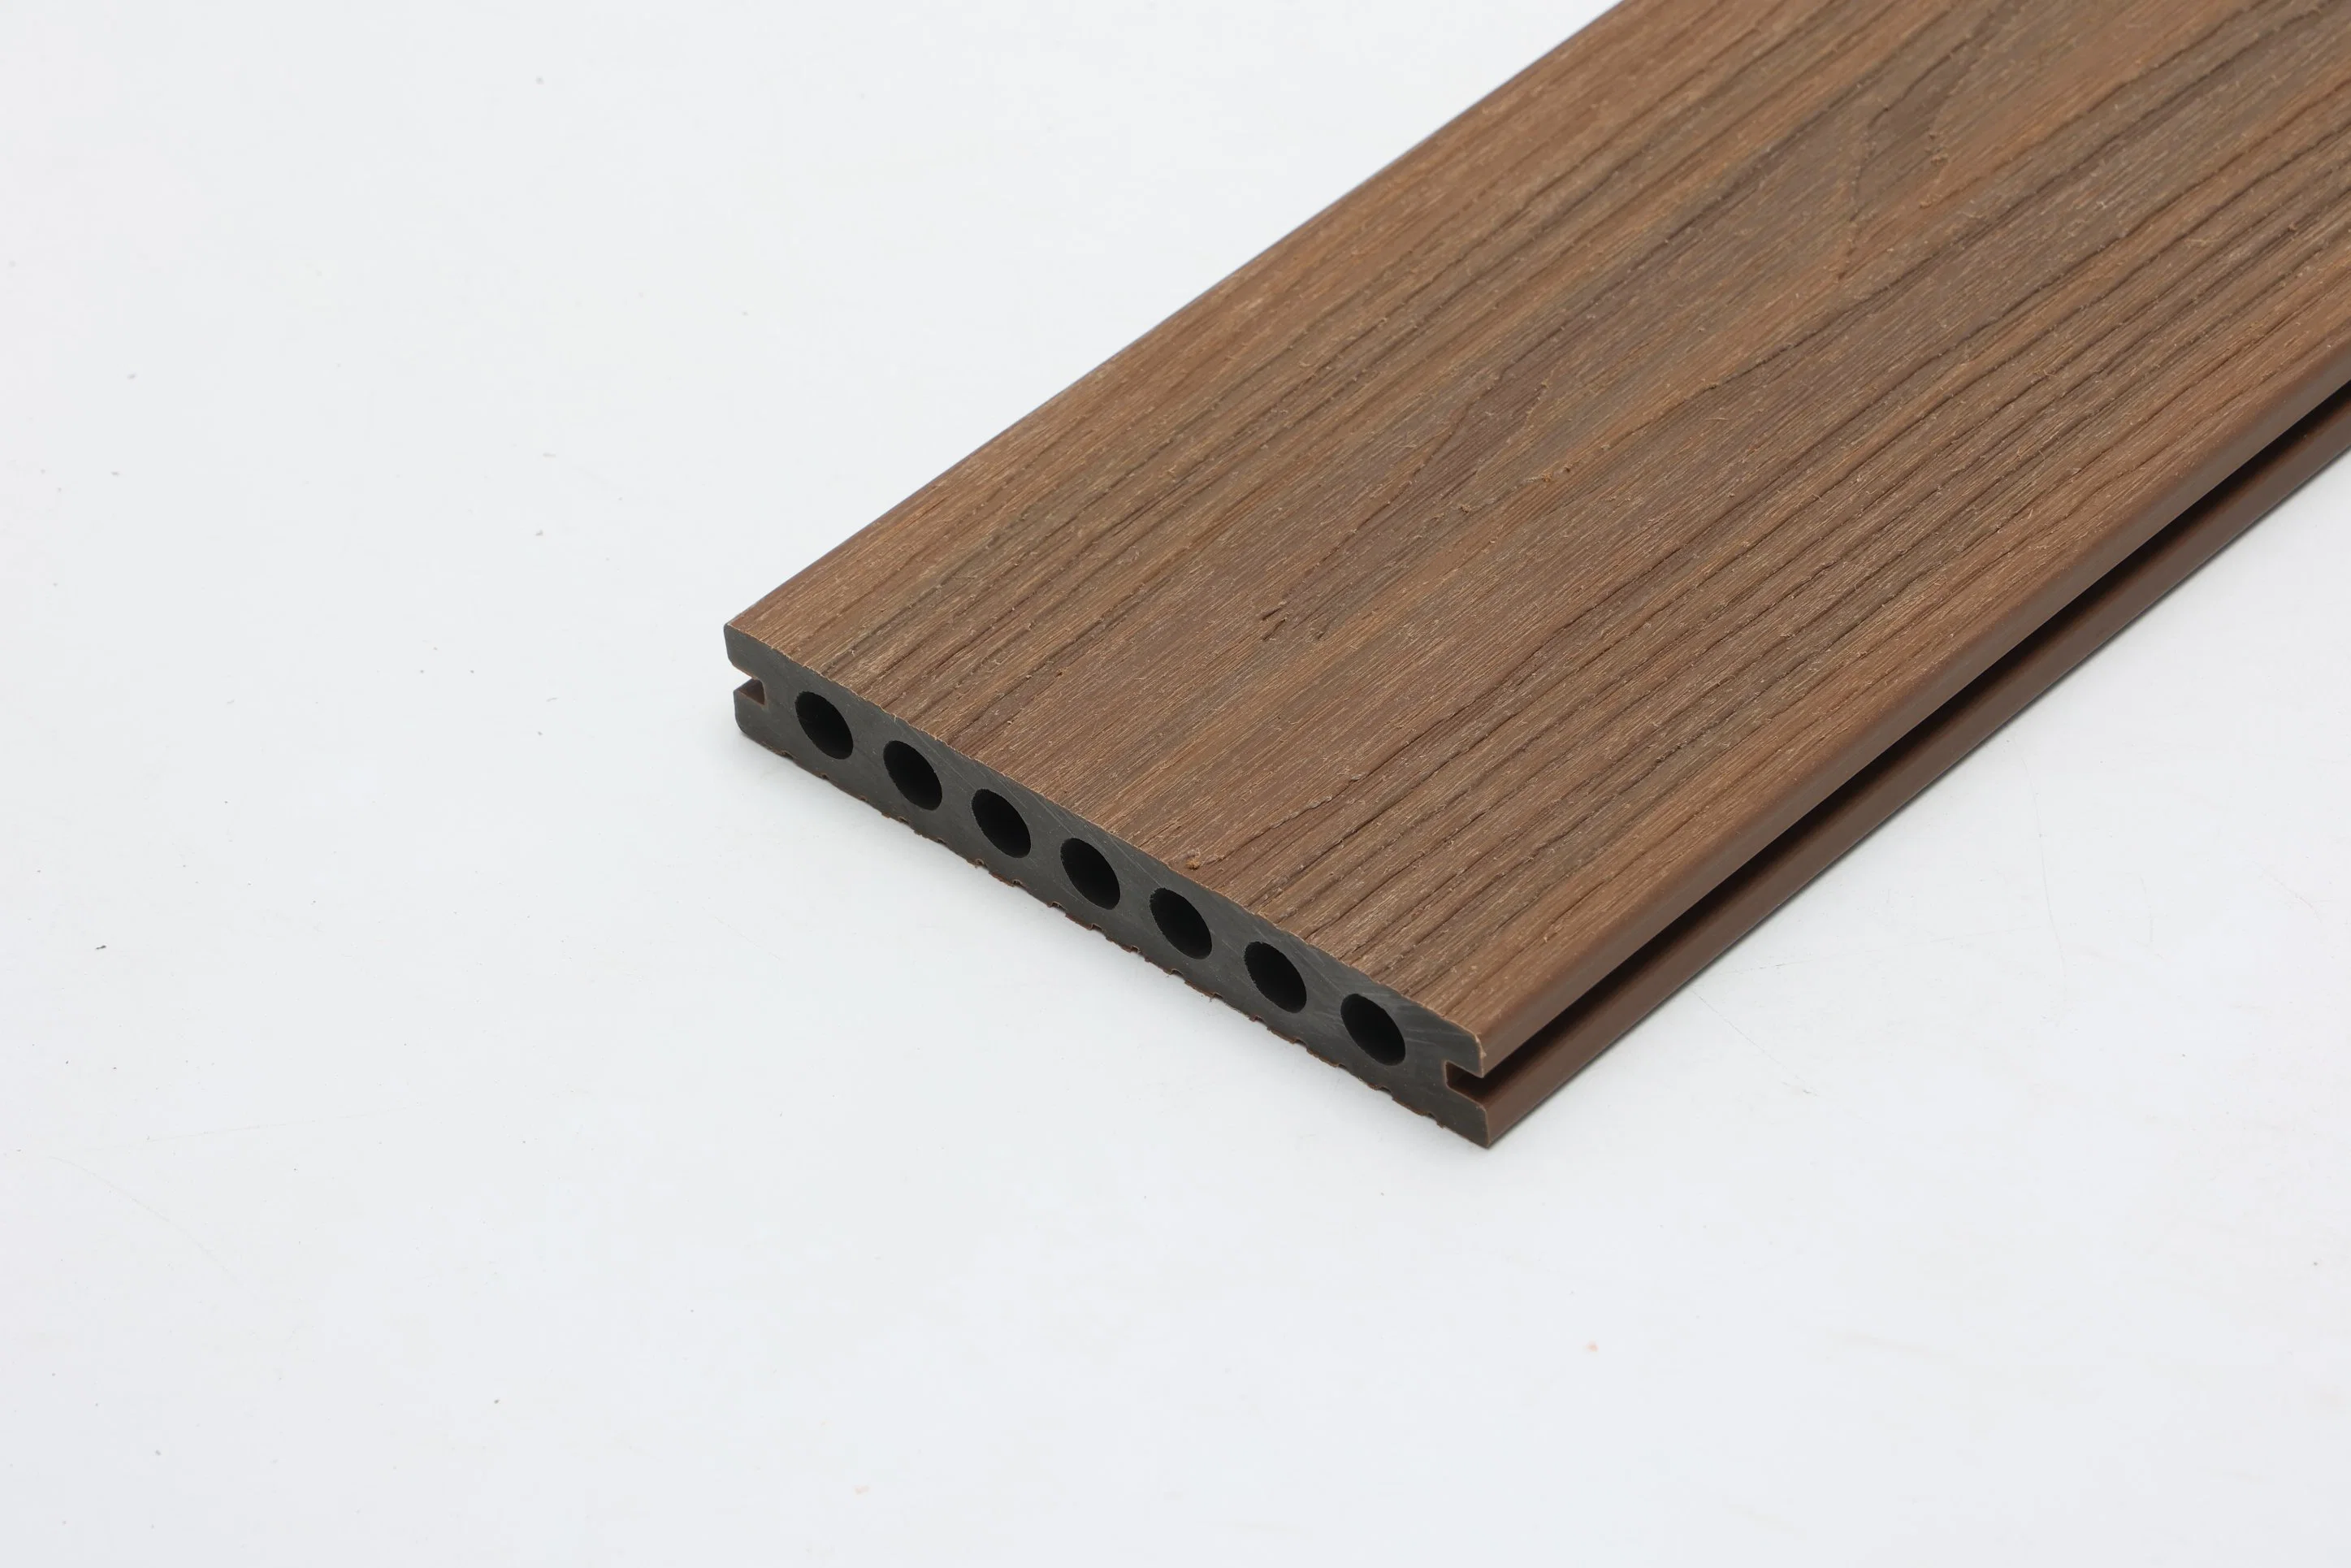 Hot Wood Grain Kunststoff Bodenbelag Deck Bodenbelag Composite Deck WPC Platine